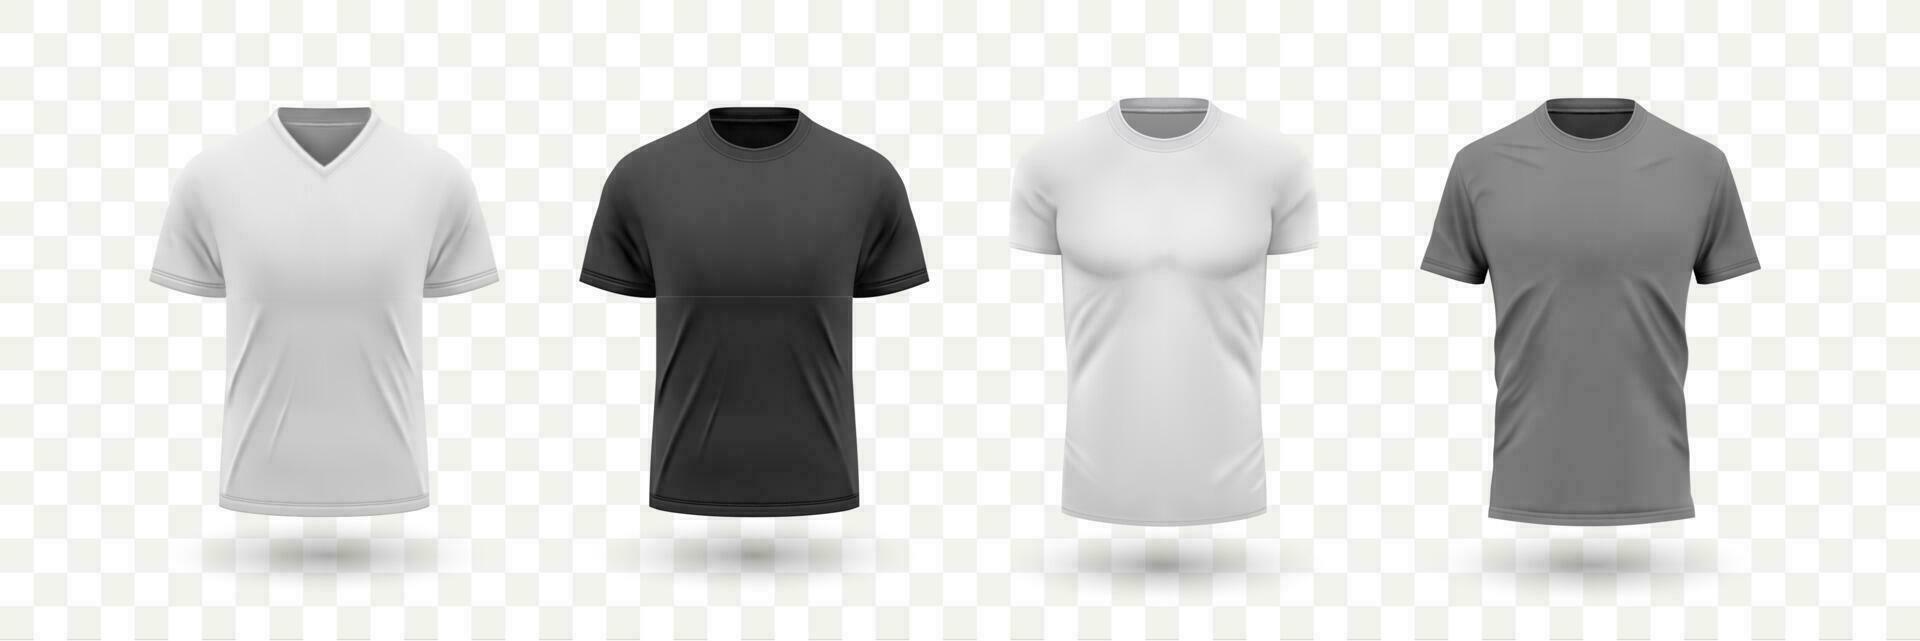 realista masculino camisa maquetas conjunto colección vector